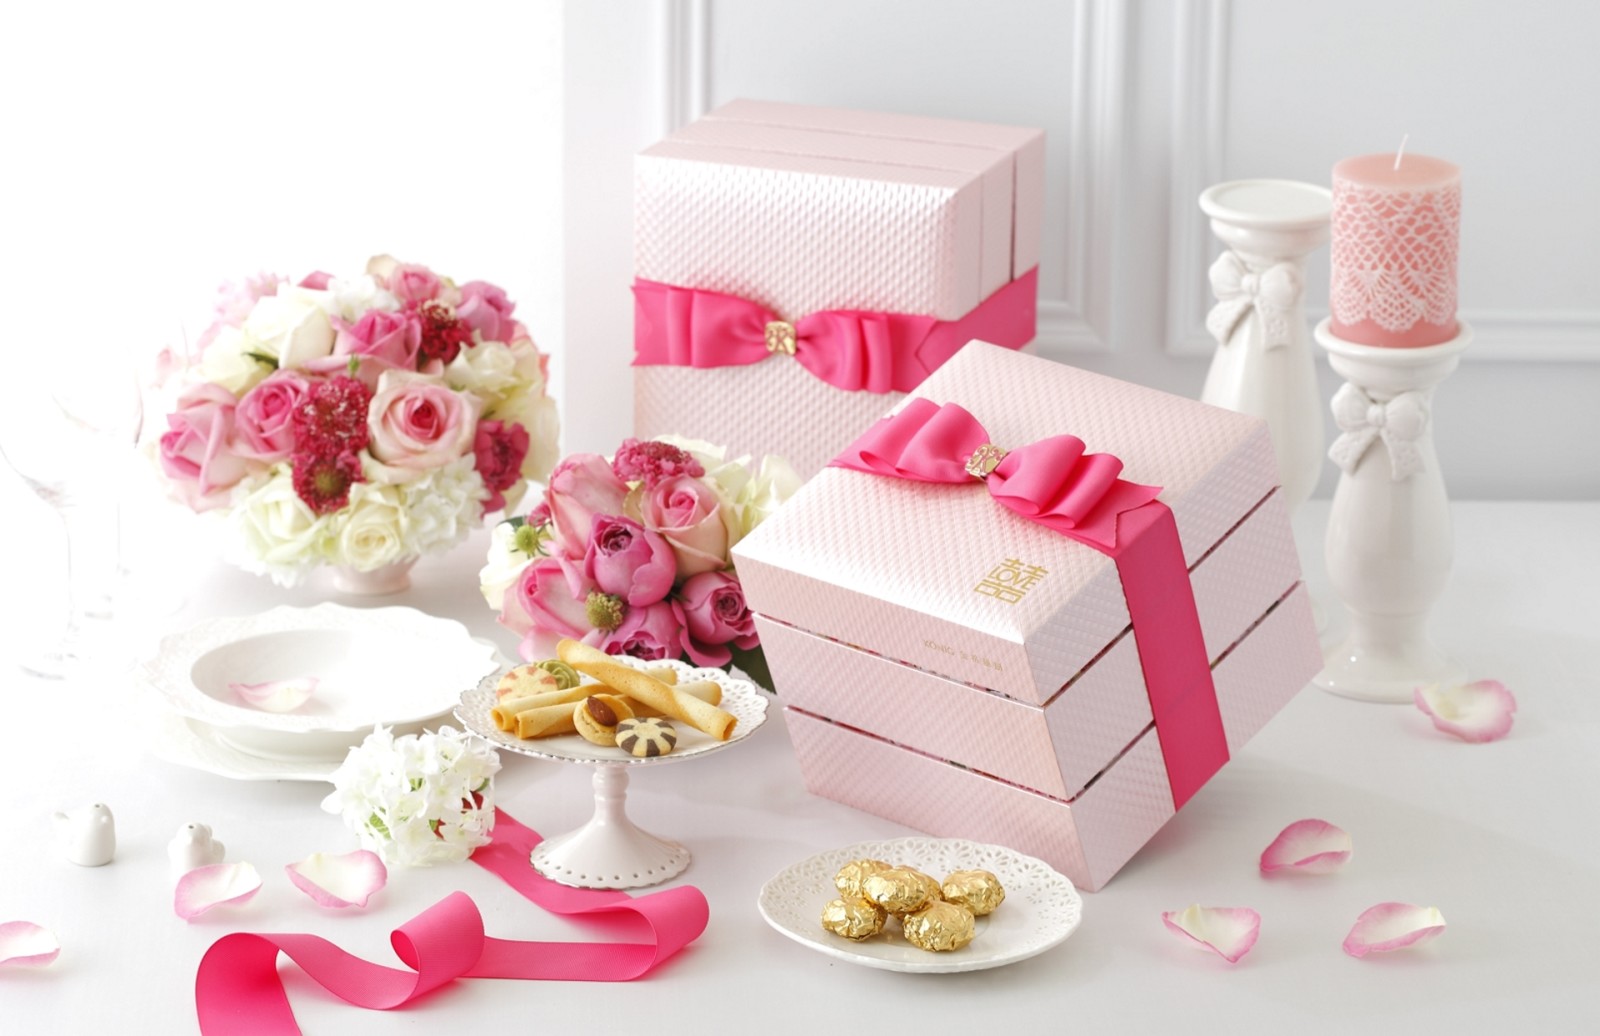 バラ, ピンク, フラワーズ, ボックス, 花束, テープ, クッキー, 弓